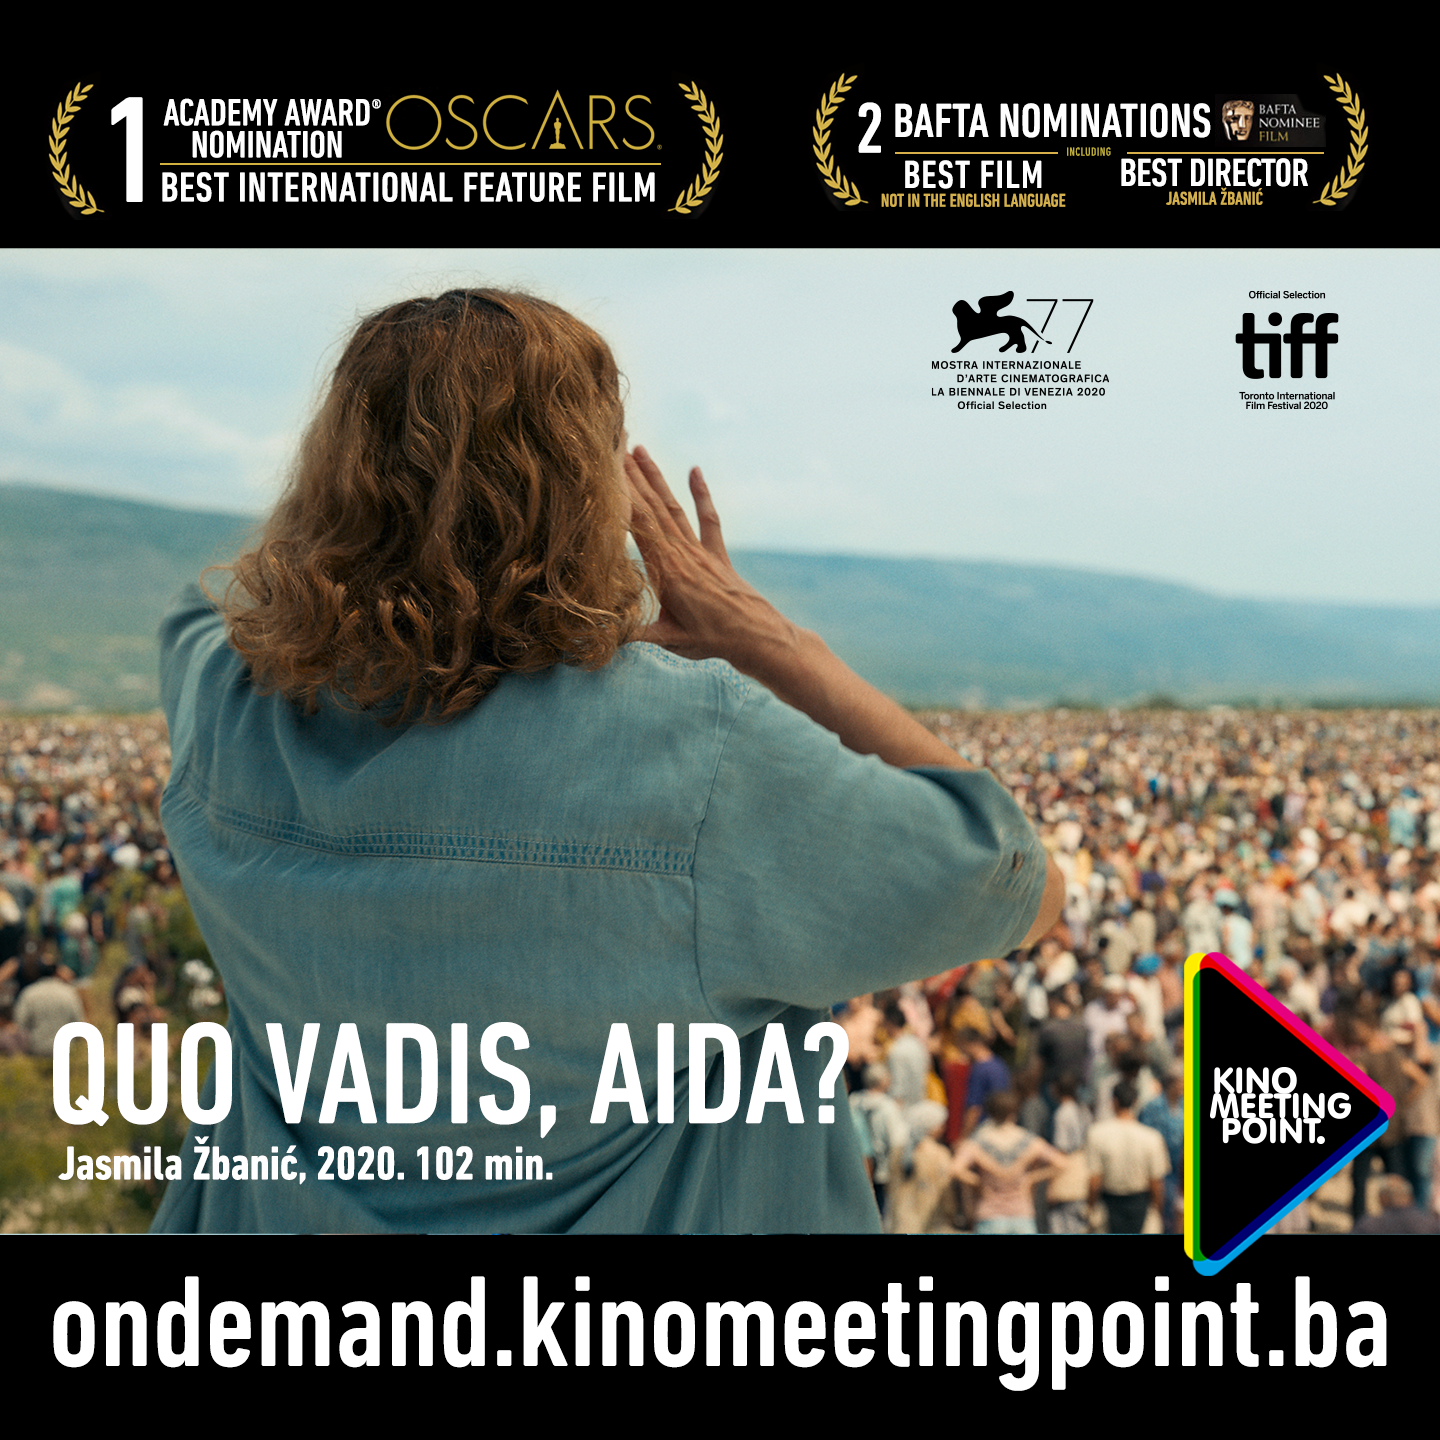 Kandidat Bosne i Hercegovine, “Quo Vadis, Aida?” Jasmile Žbanić, osvojio nominaciju za Oscar